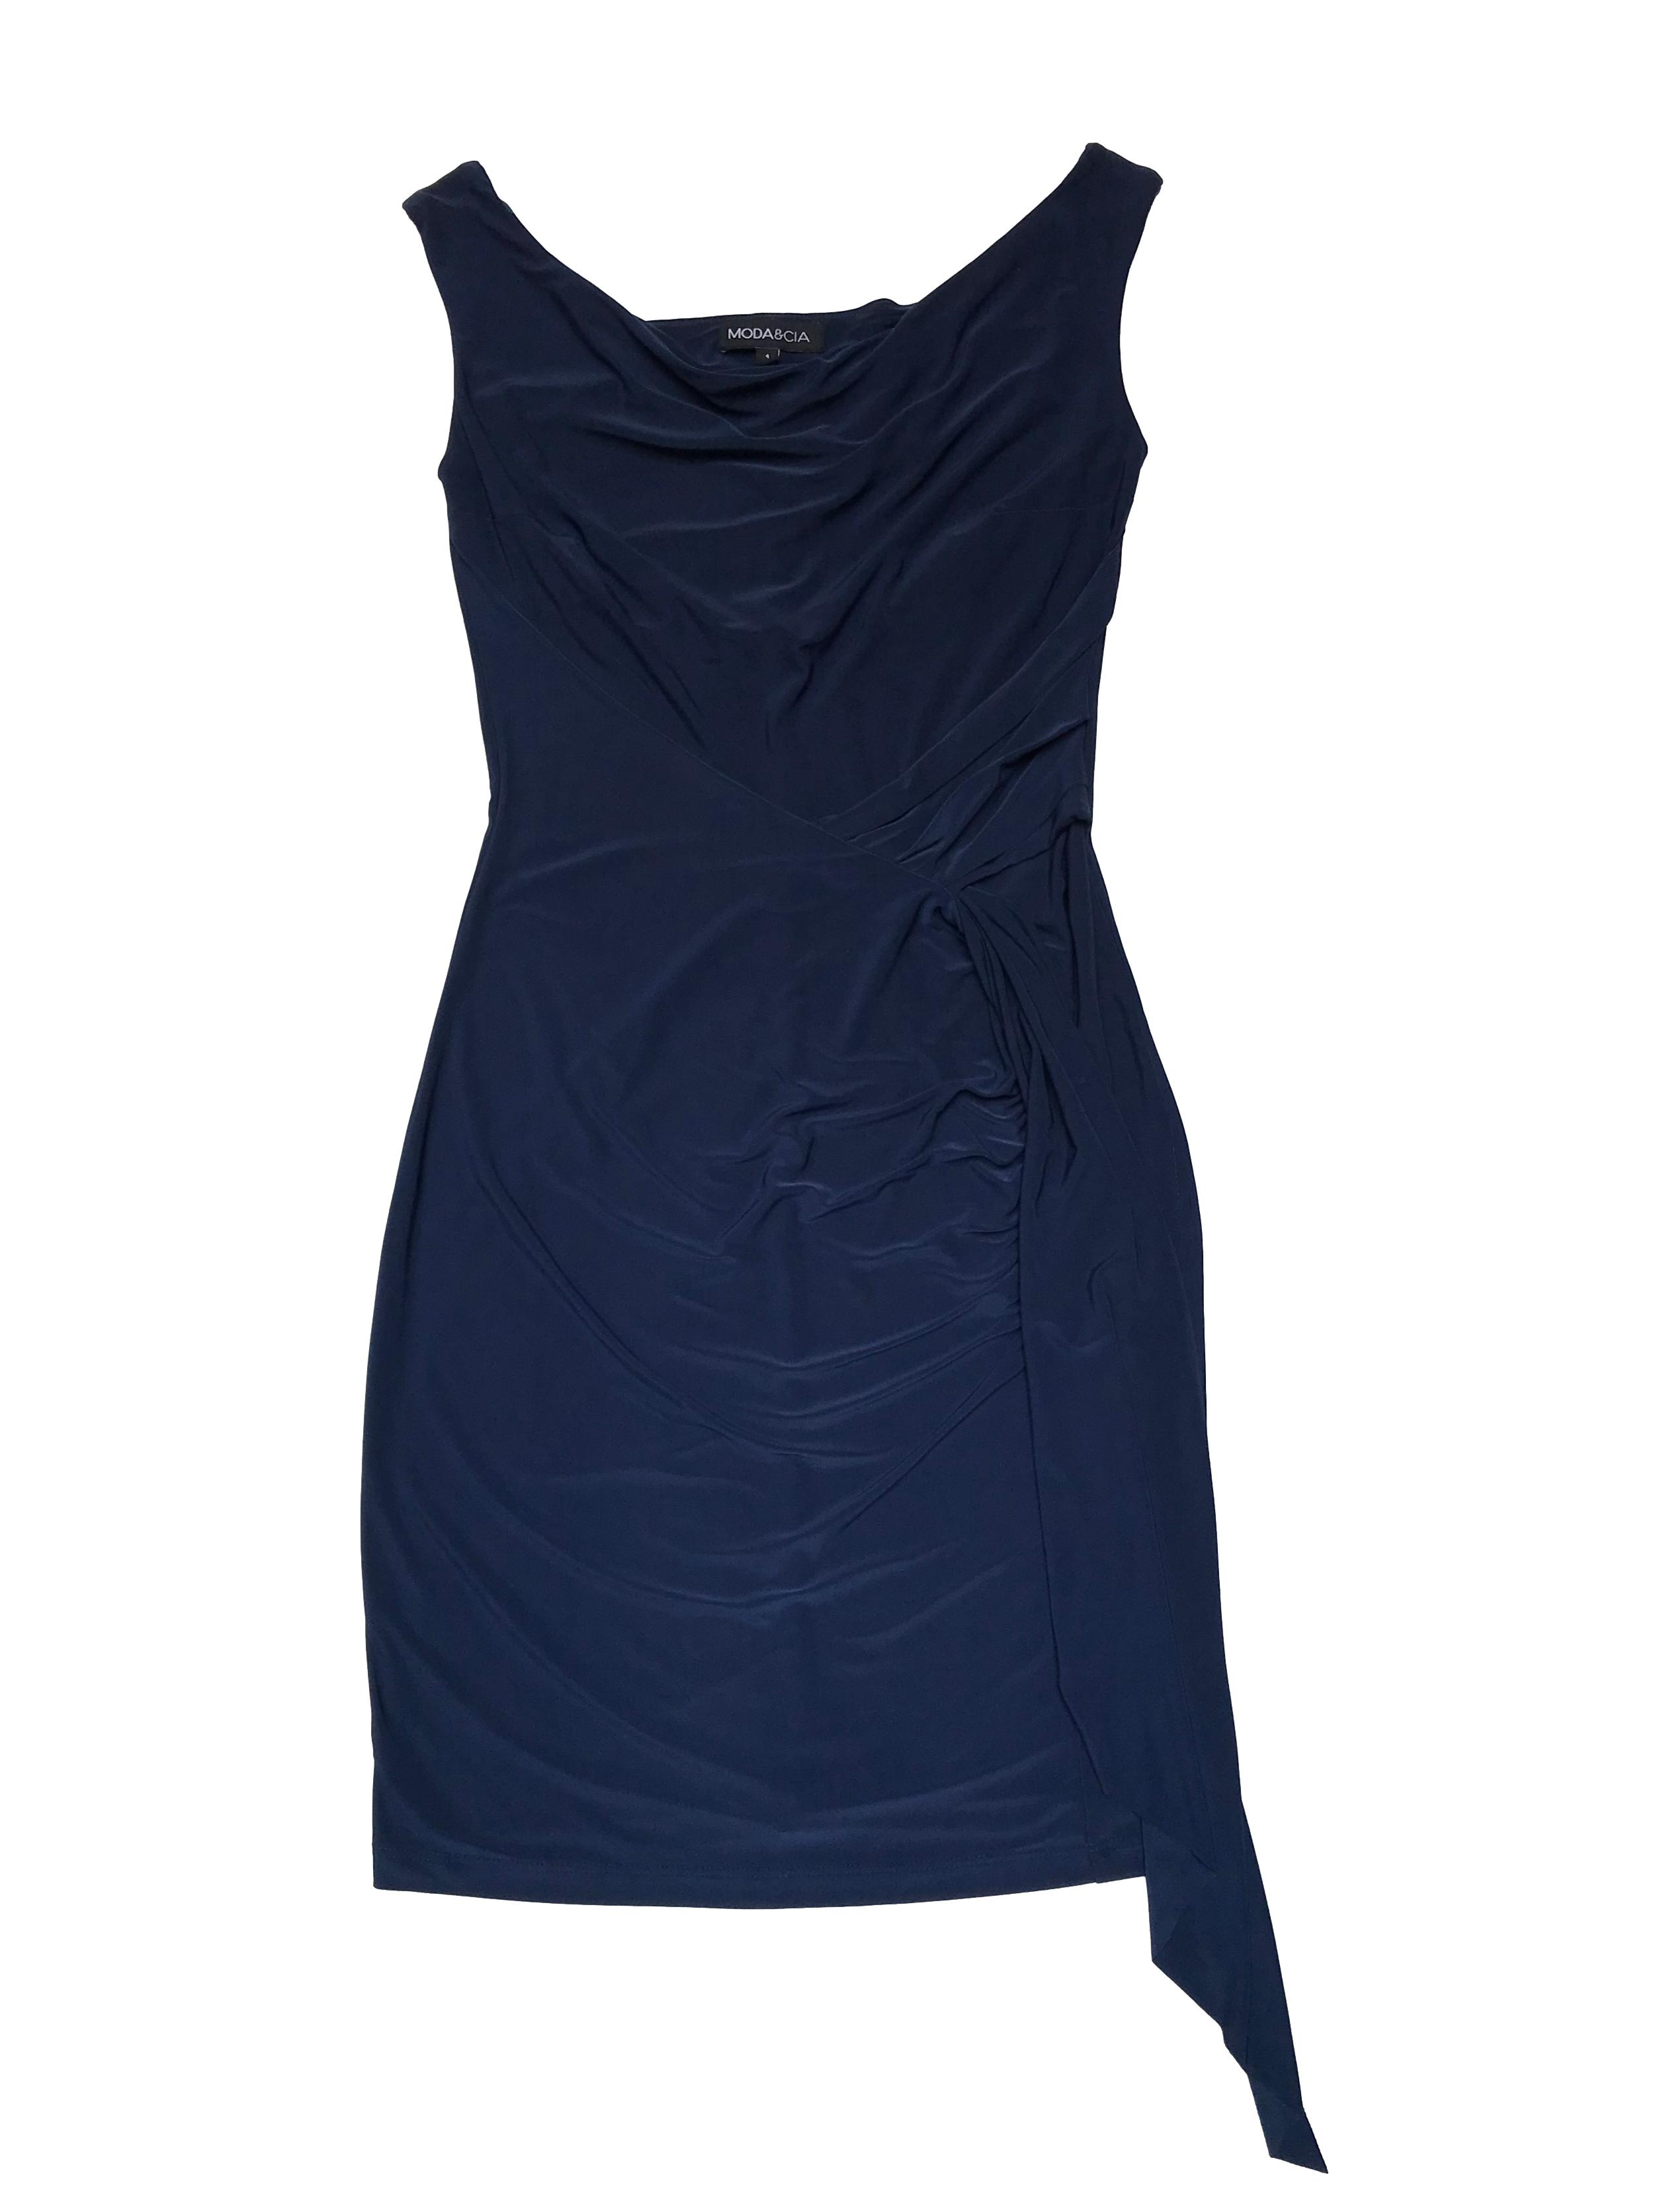 Vestido Moda&cia de tela stretch azul, detalles drapeados y cruzados en el cuerpo, forro en el pecho. Busto 86cm sin estirar Largo 90-95cm